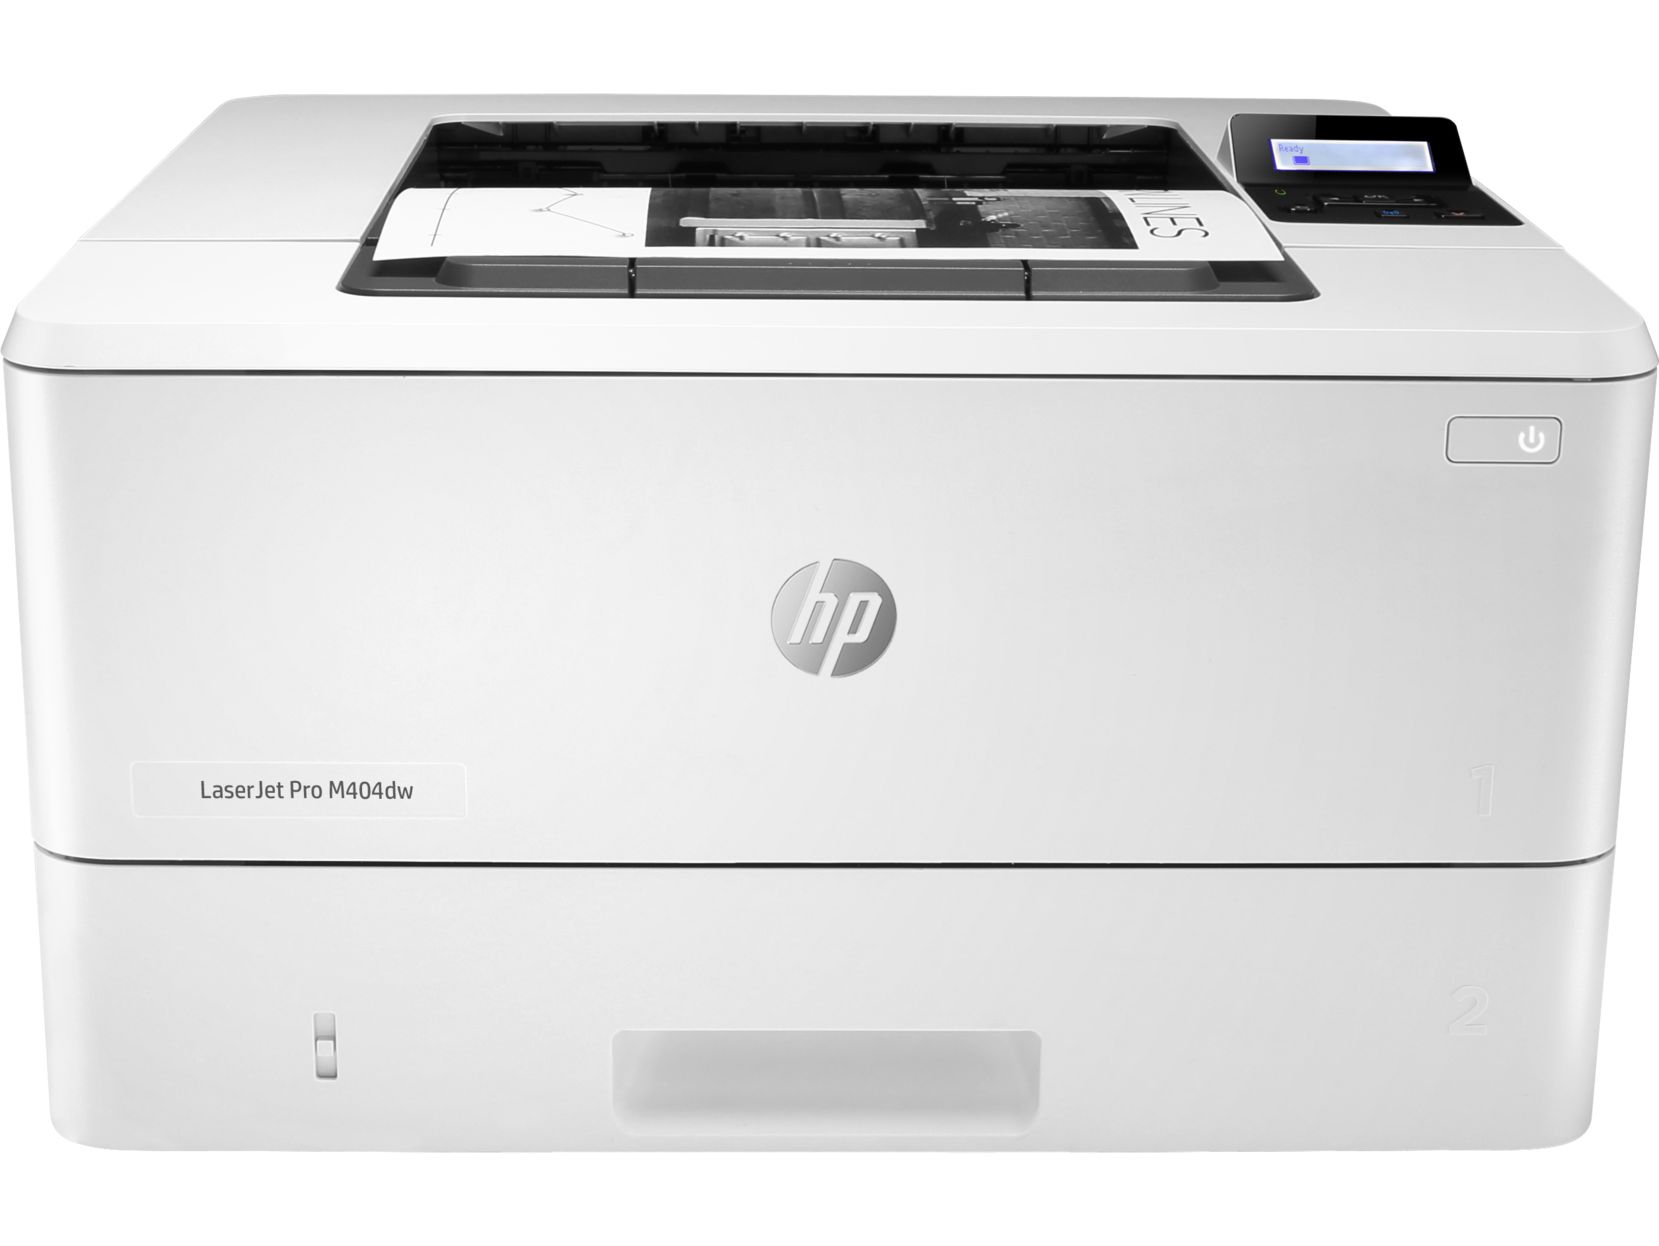 Лазерный принтер HP LaserJet pro M404dw принтер hp laserjet pro m404dn